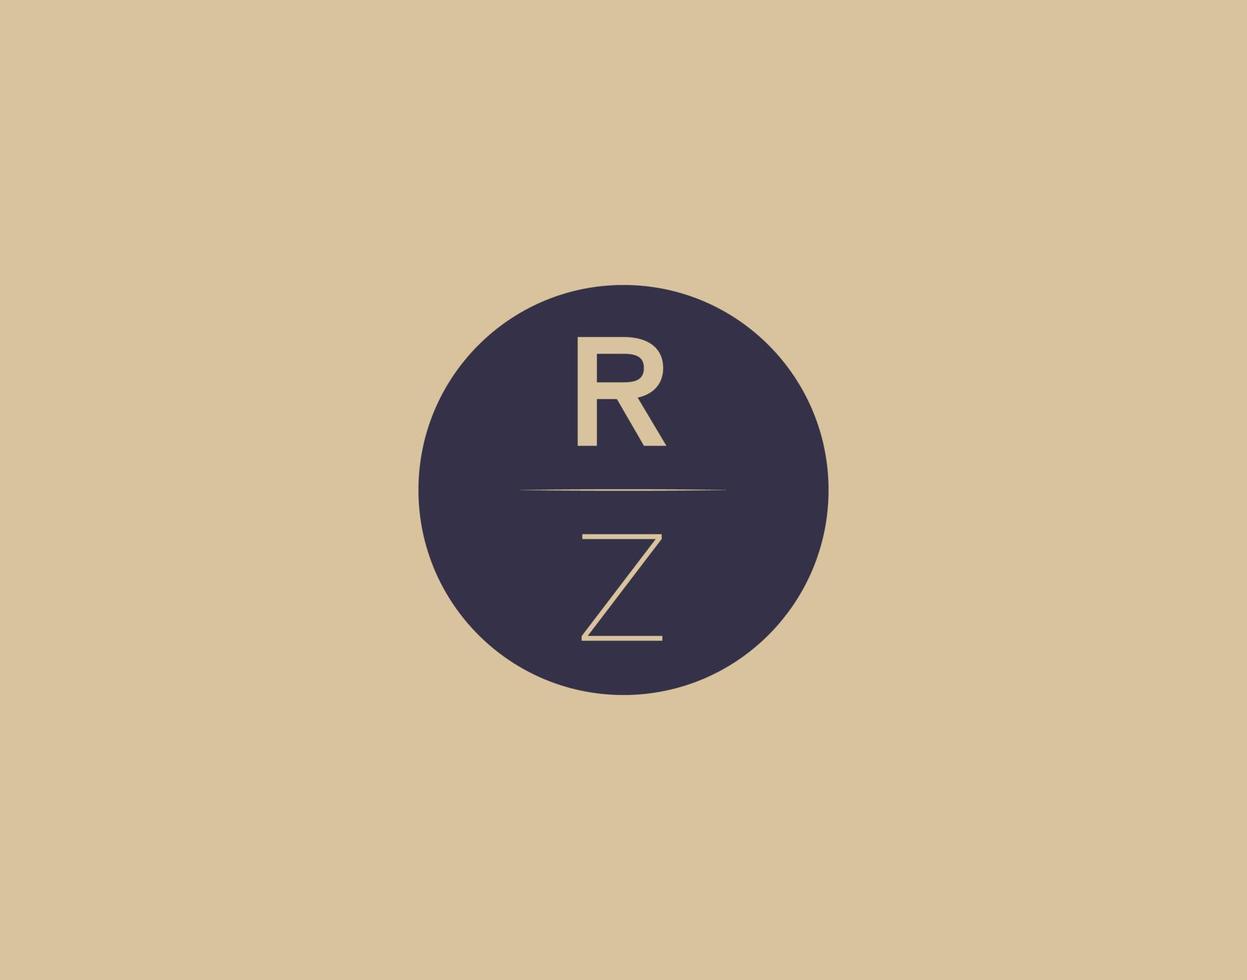 RZ letter modern elegant logo design vector images